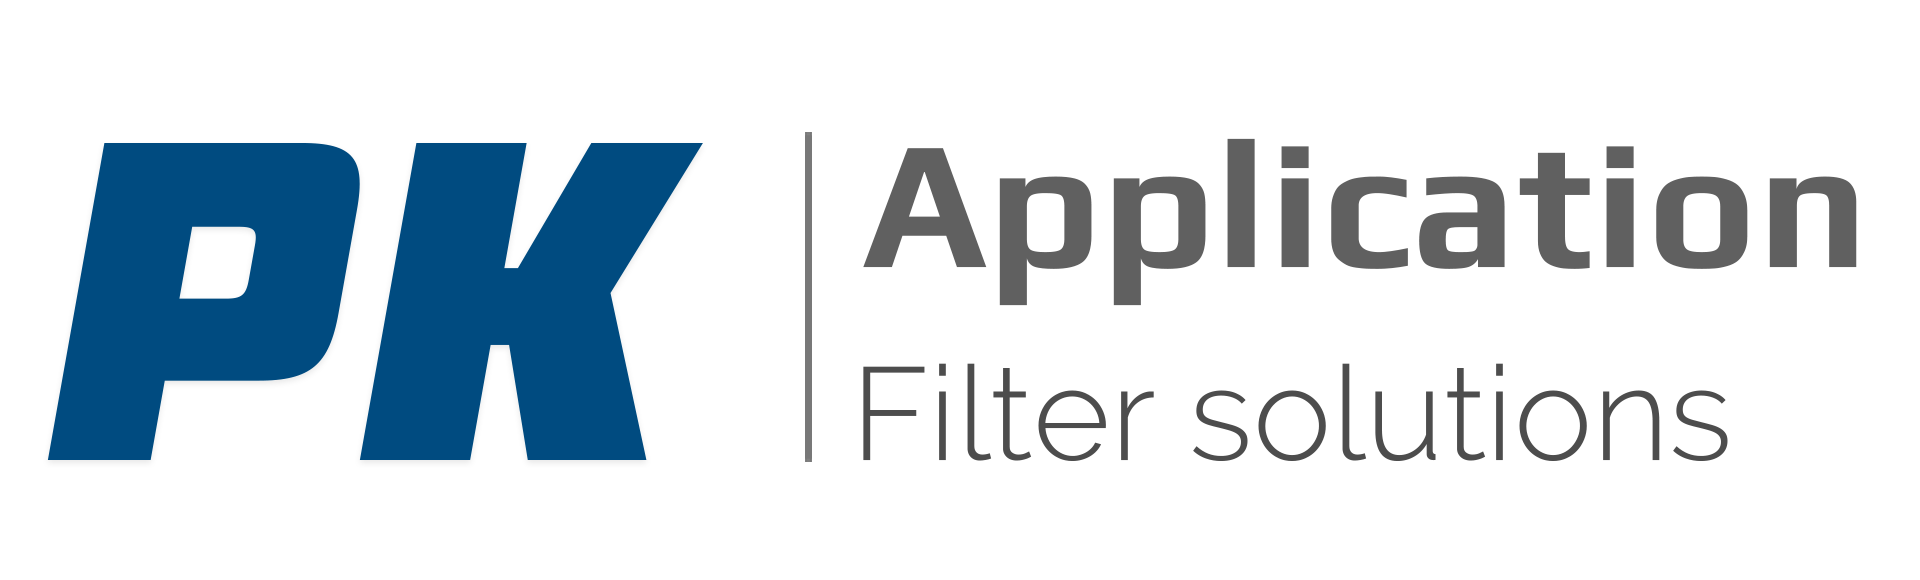 PK Filters Solution, Φίλτρα Νέα Σμύρνη